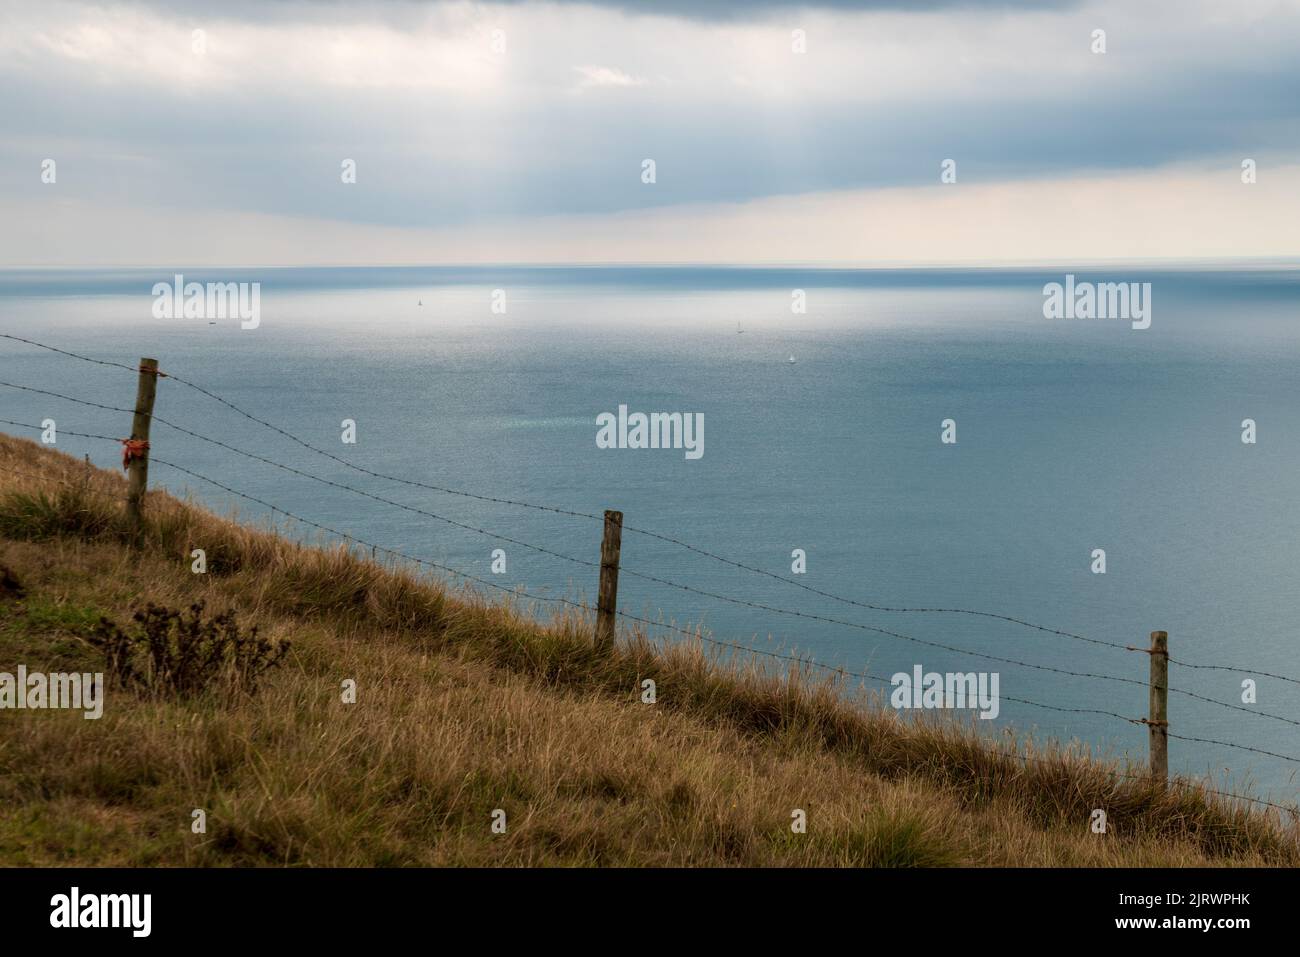 Paysage marin sombre et spectaculaire sur une falaise de la côte jurassique, Dorset, Angleterre, Royaume-Uni avec herbe balayée par le vent et poste de clôture et des éclats de lumière du soleil sur la mer Banque D'Images